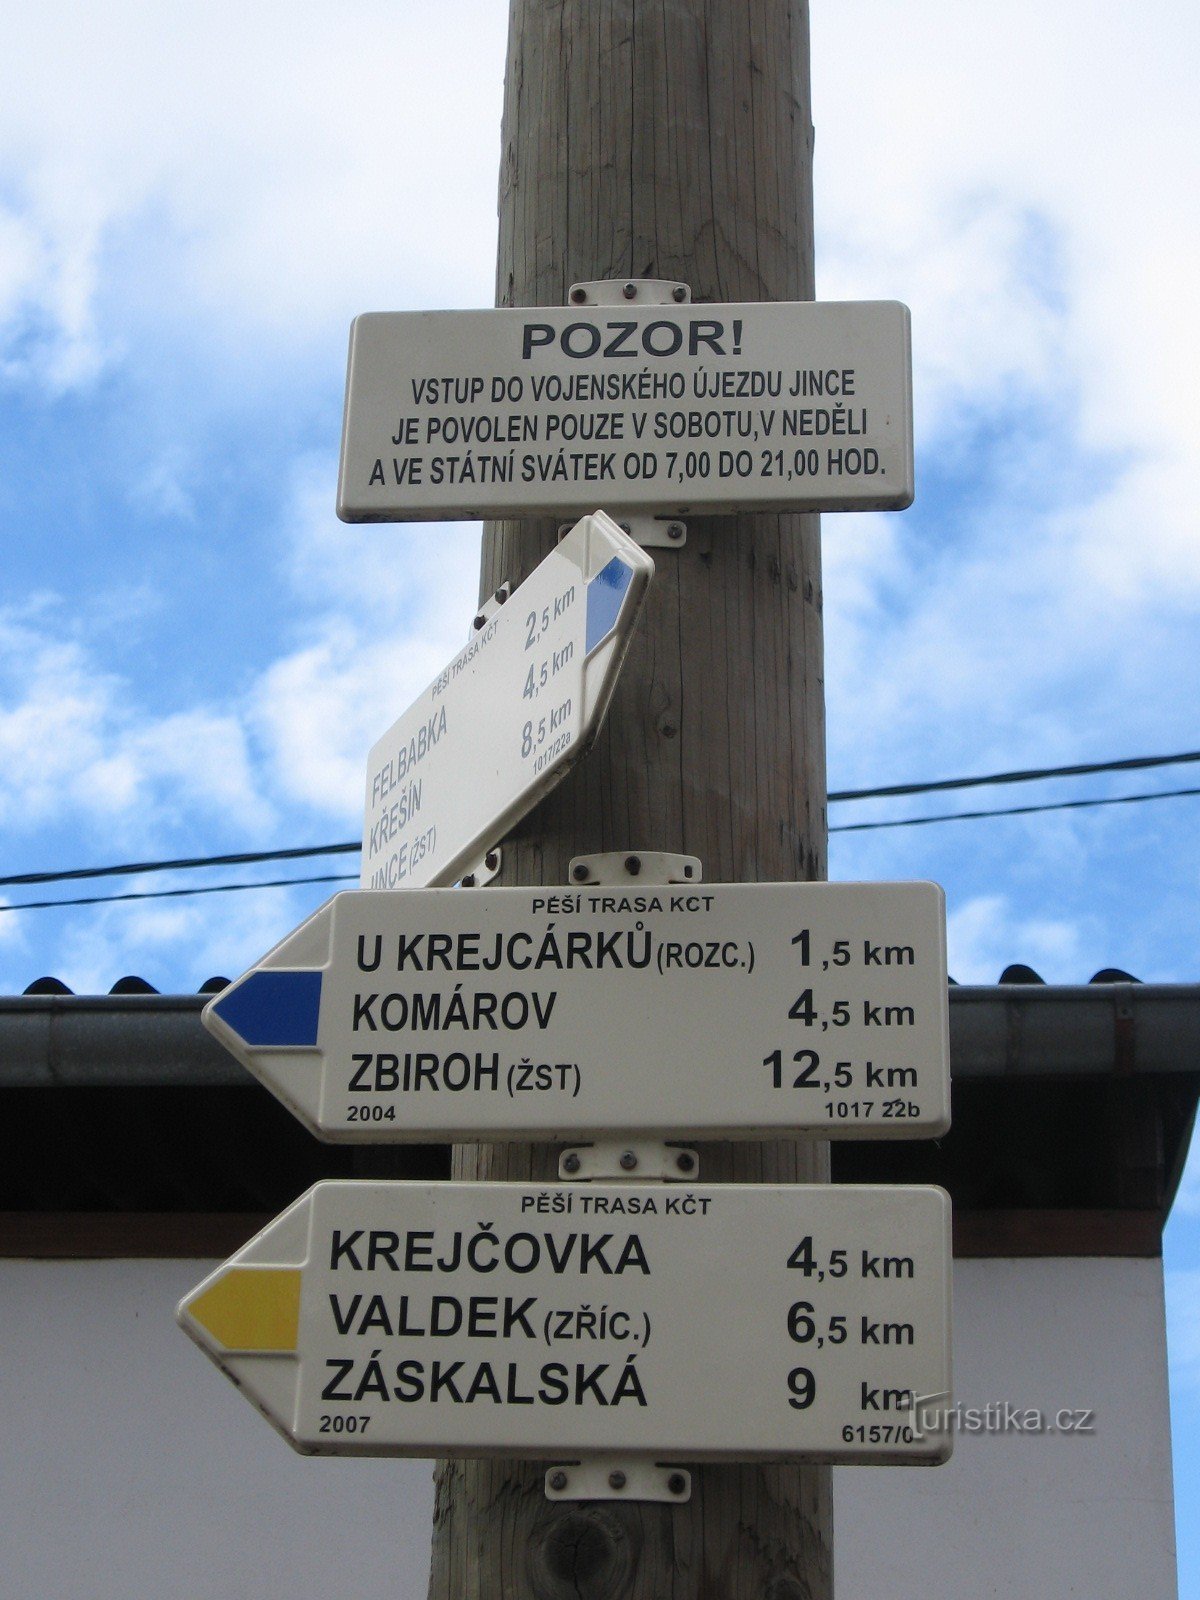 Placa de sinalização de Podluha